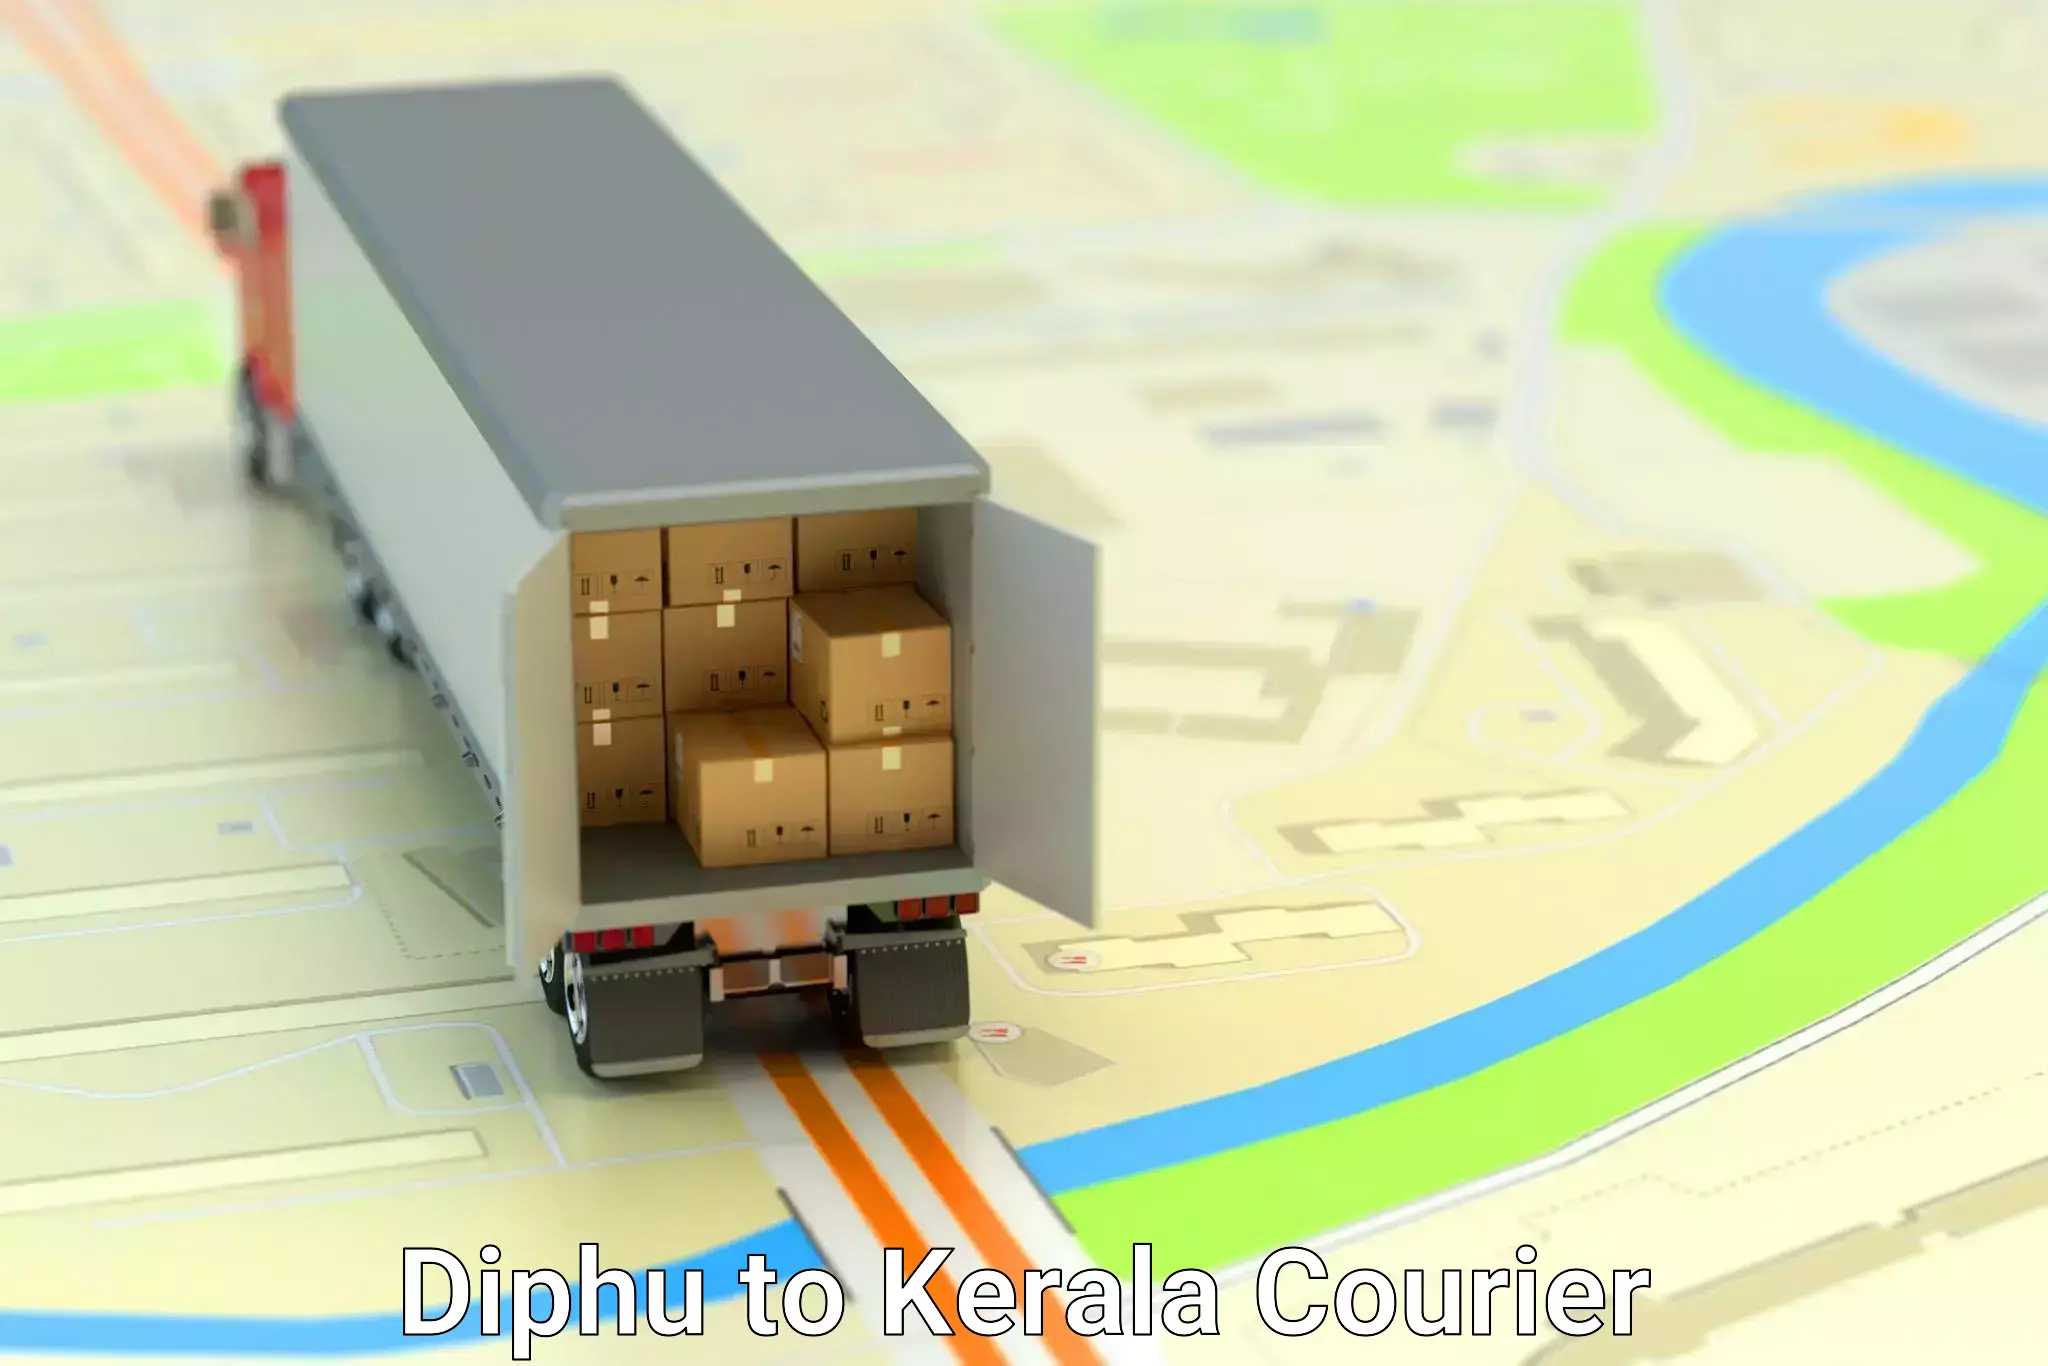 Express courier capabilities Diphu to Cochin Port Kochi